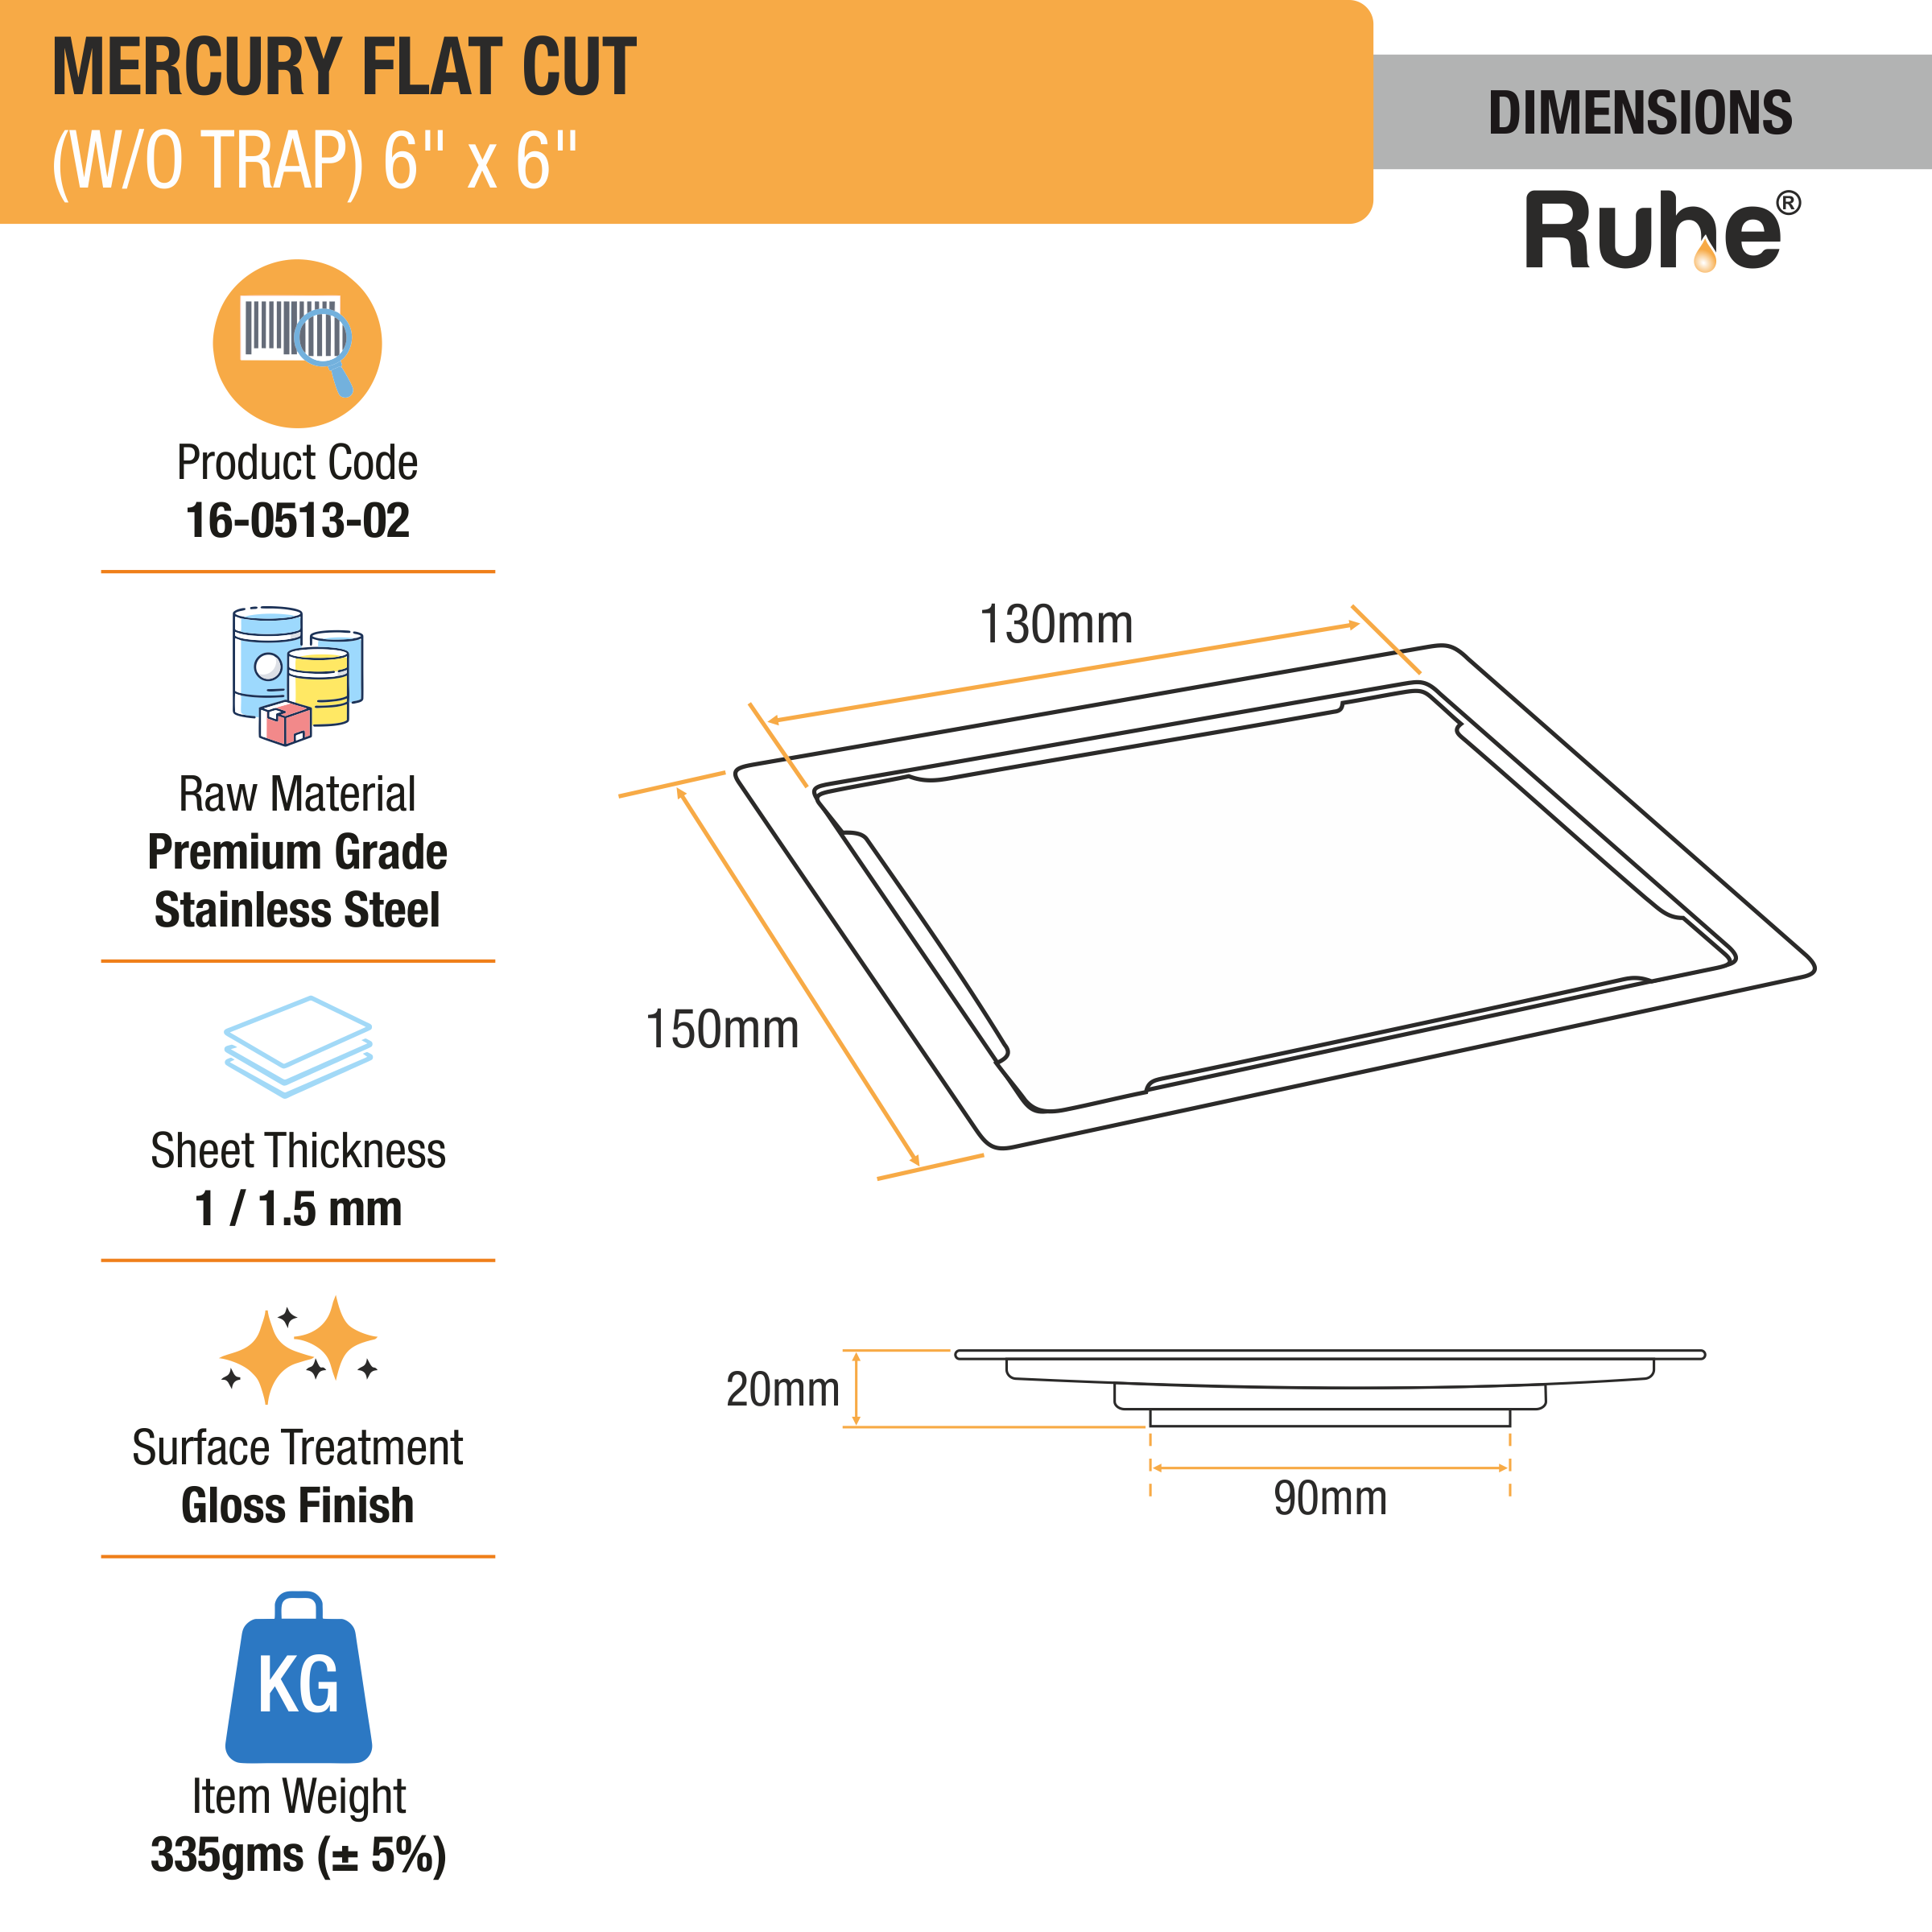 Mercury Square Premium Flat Cut Floor Drain (6 x 6 Inches) dimensions and sizes